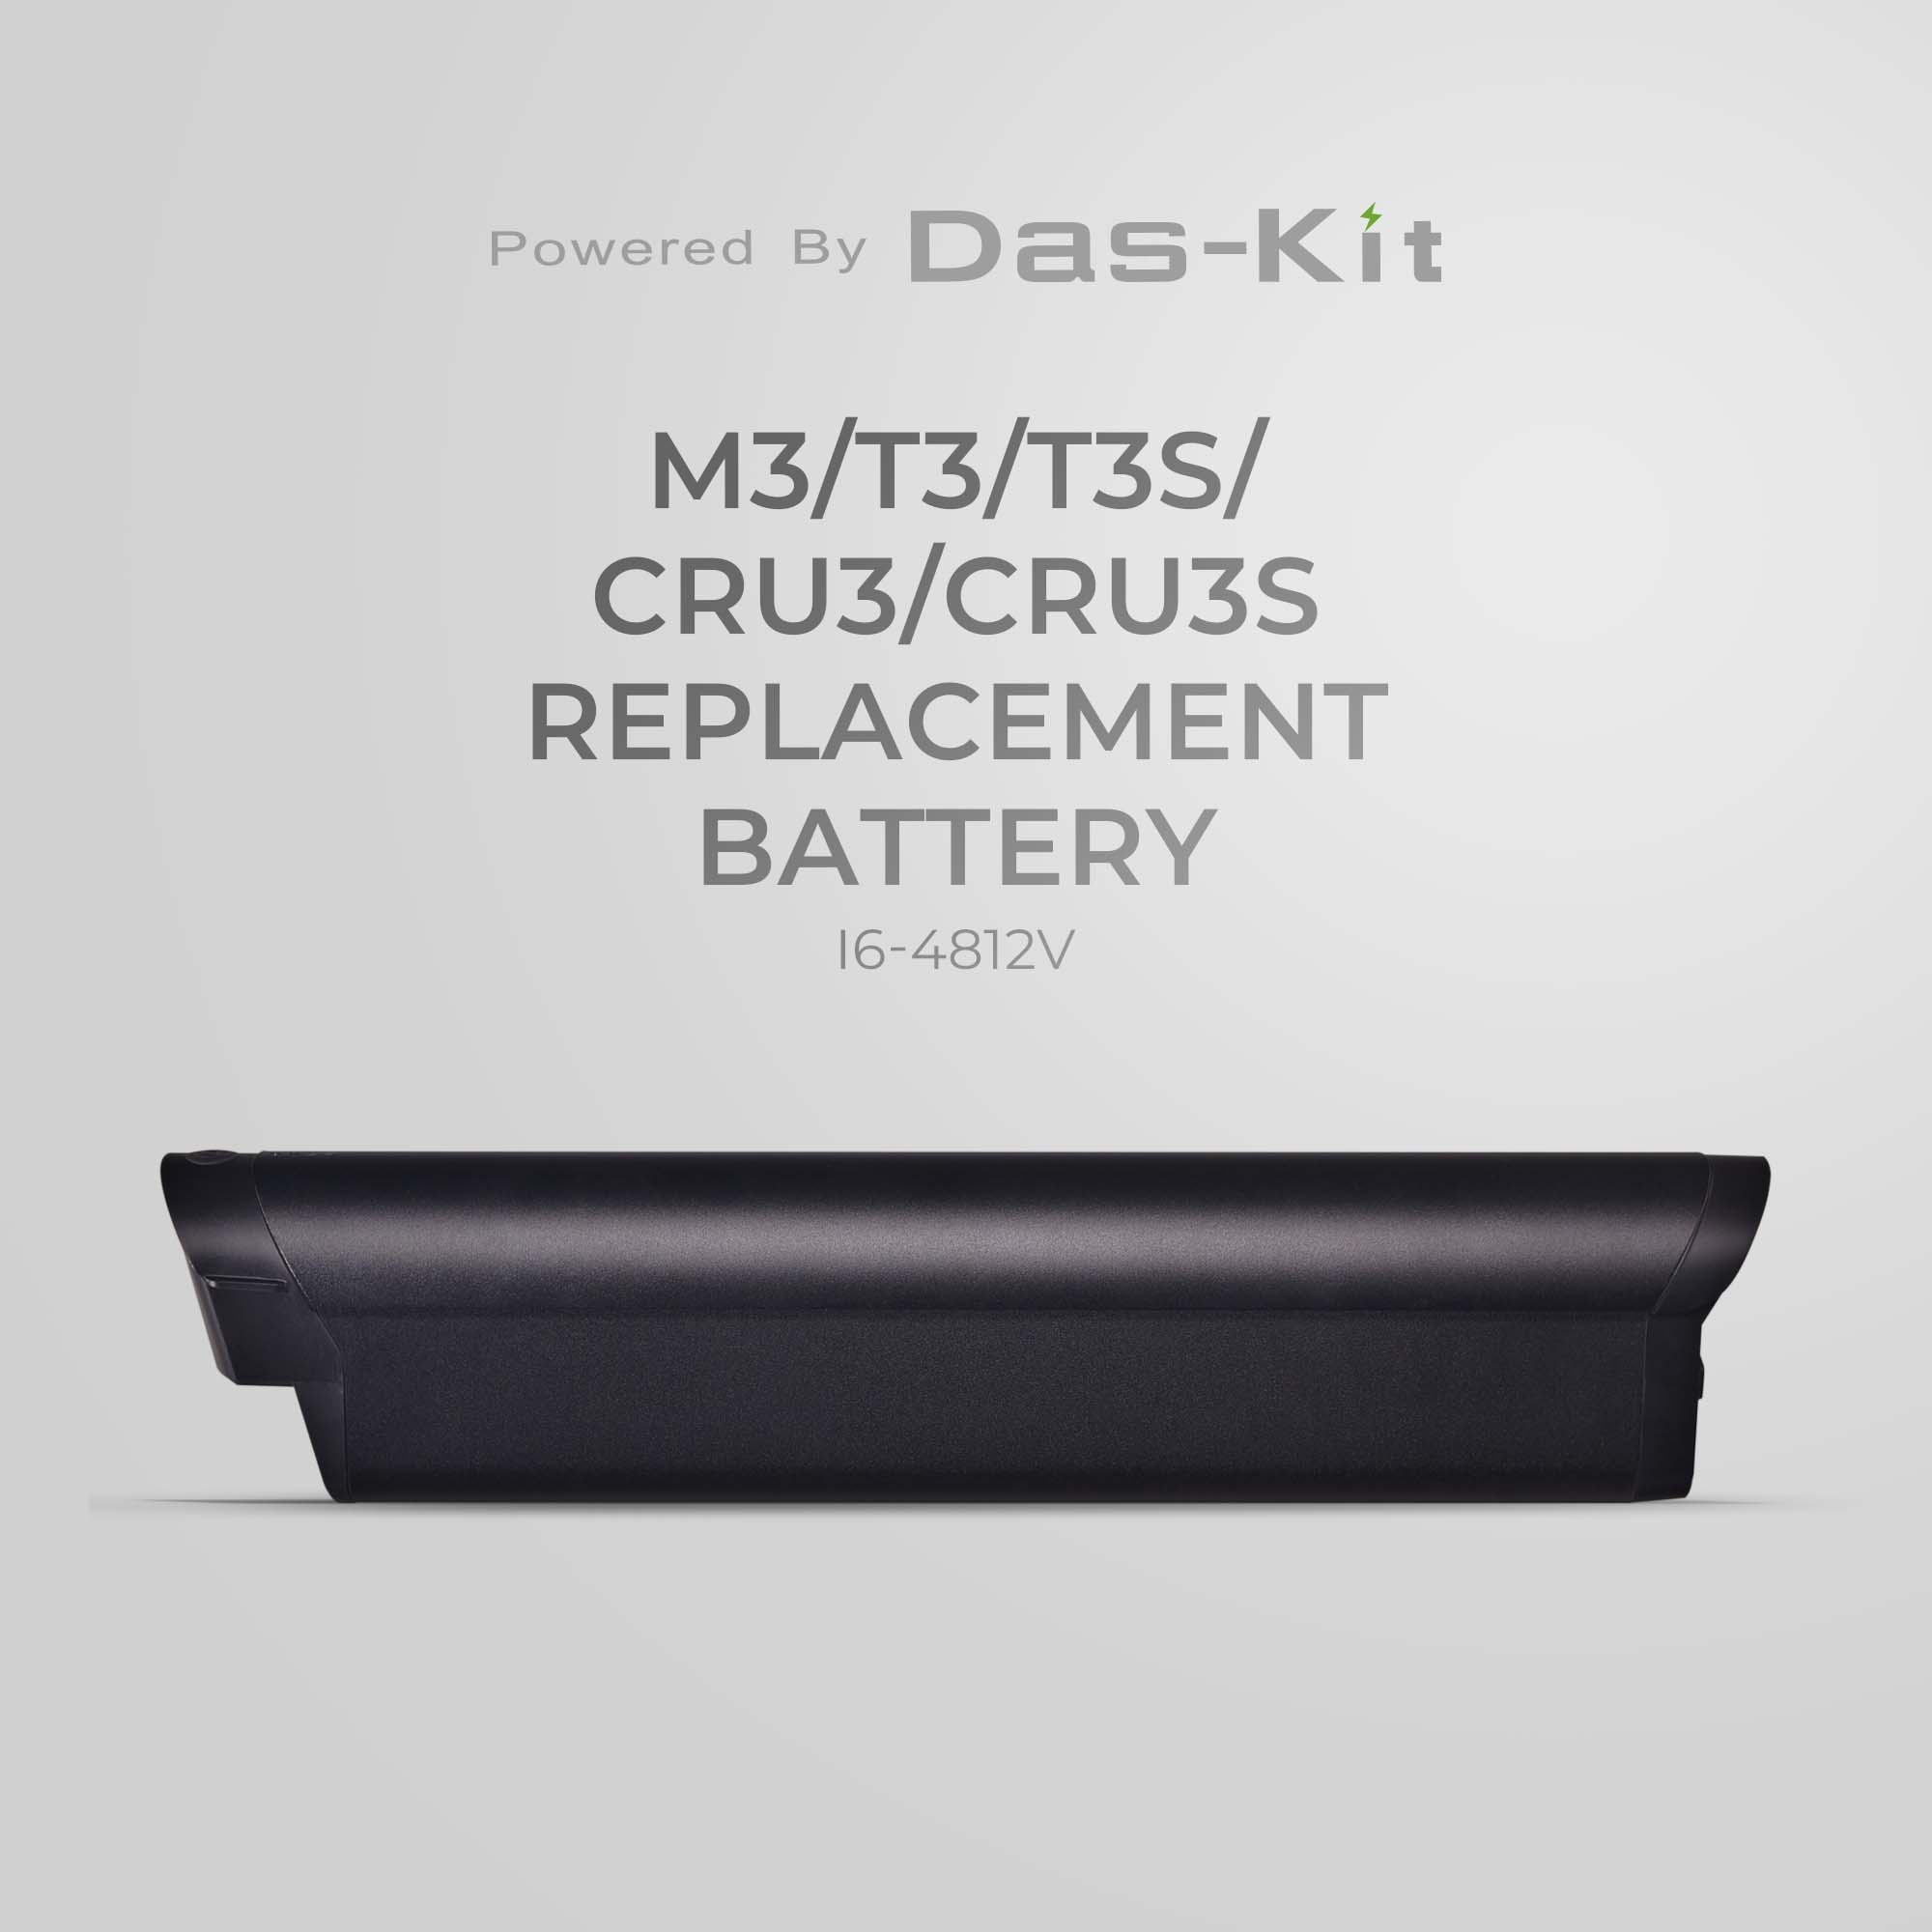 NCM M3/T3/T3s/Cru3/Cru3s Replacement Battery - I6-4812V